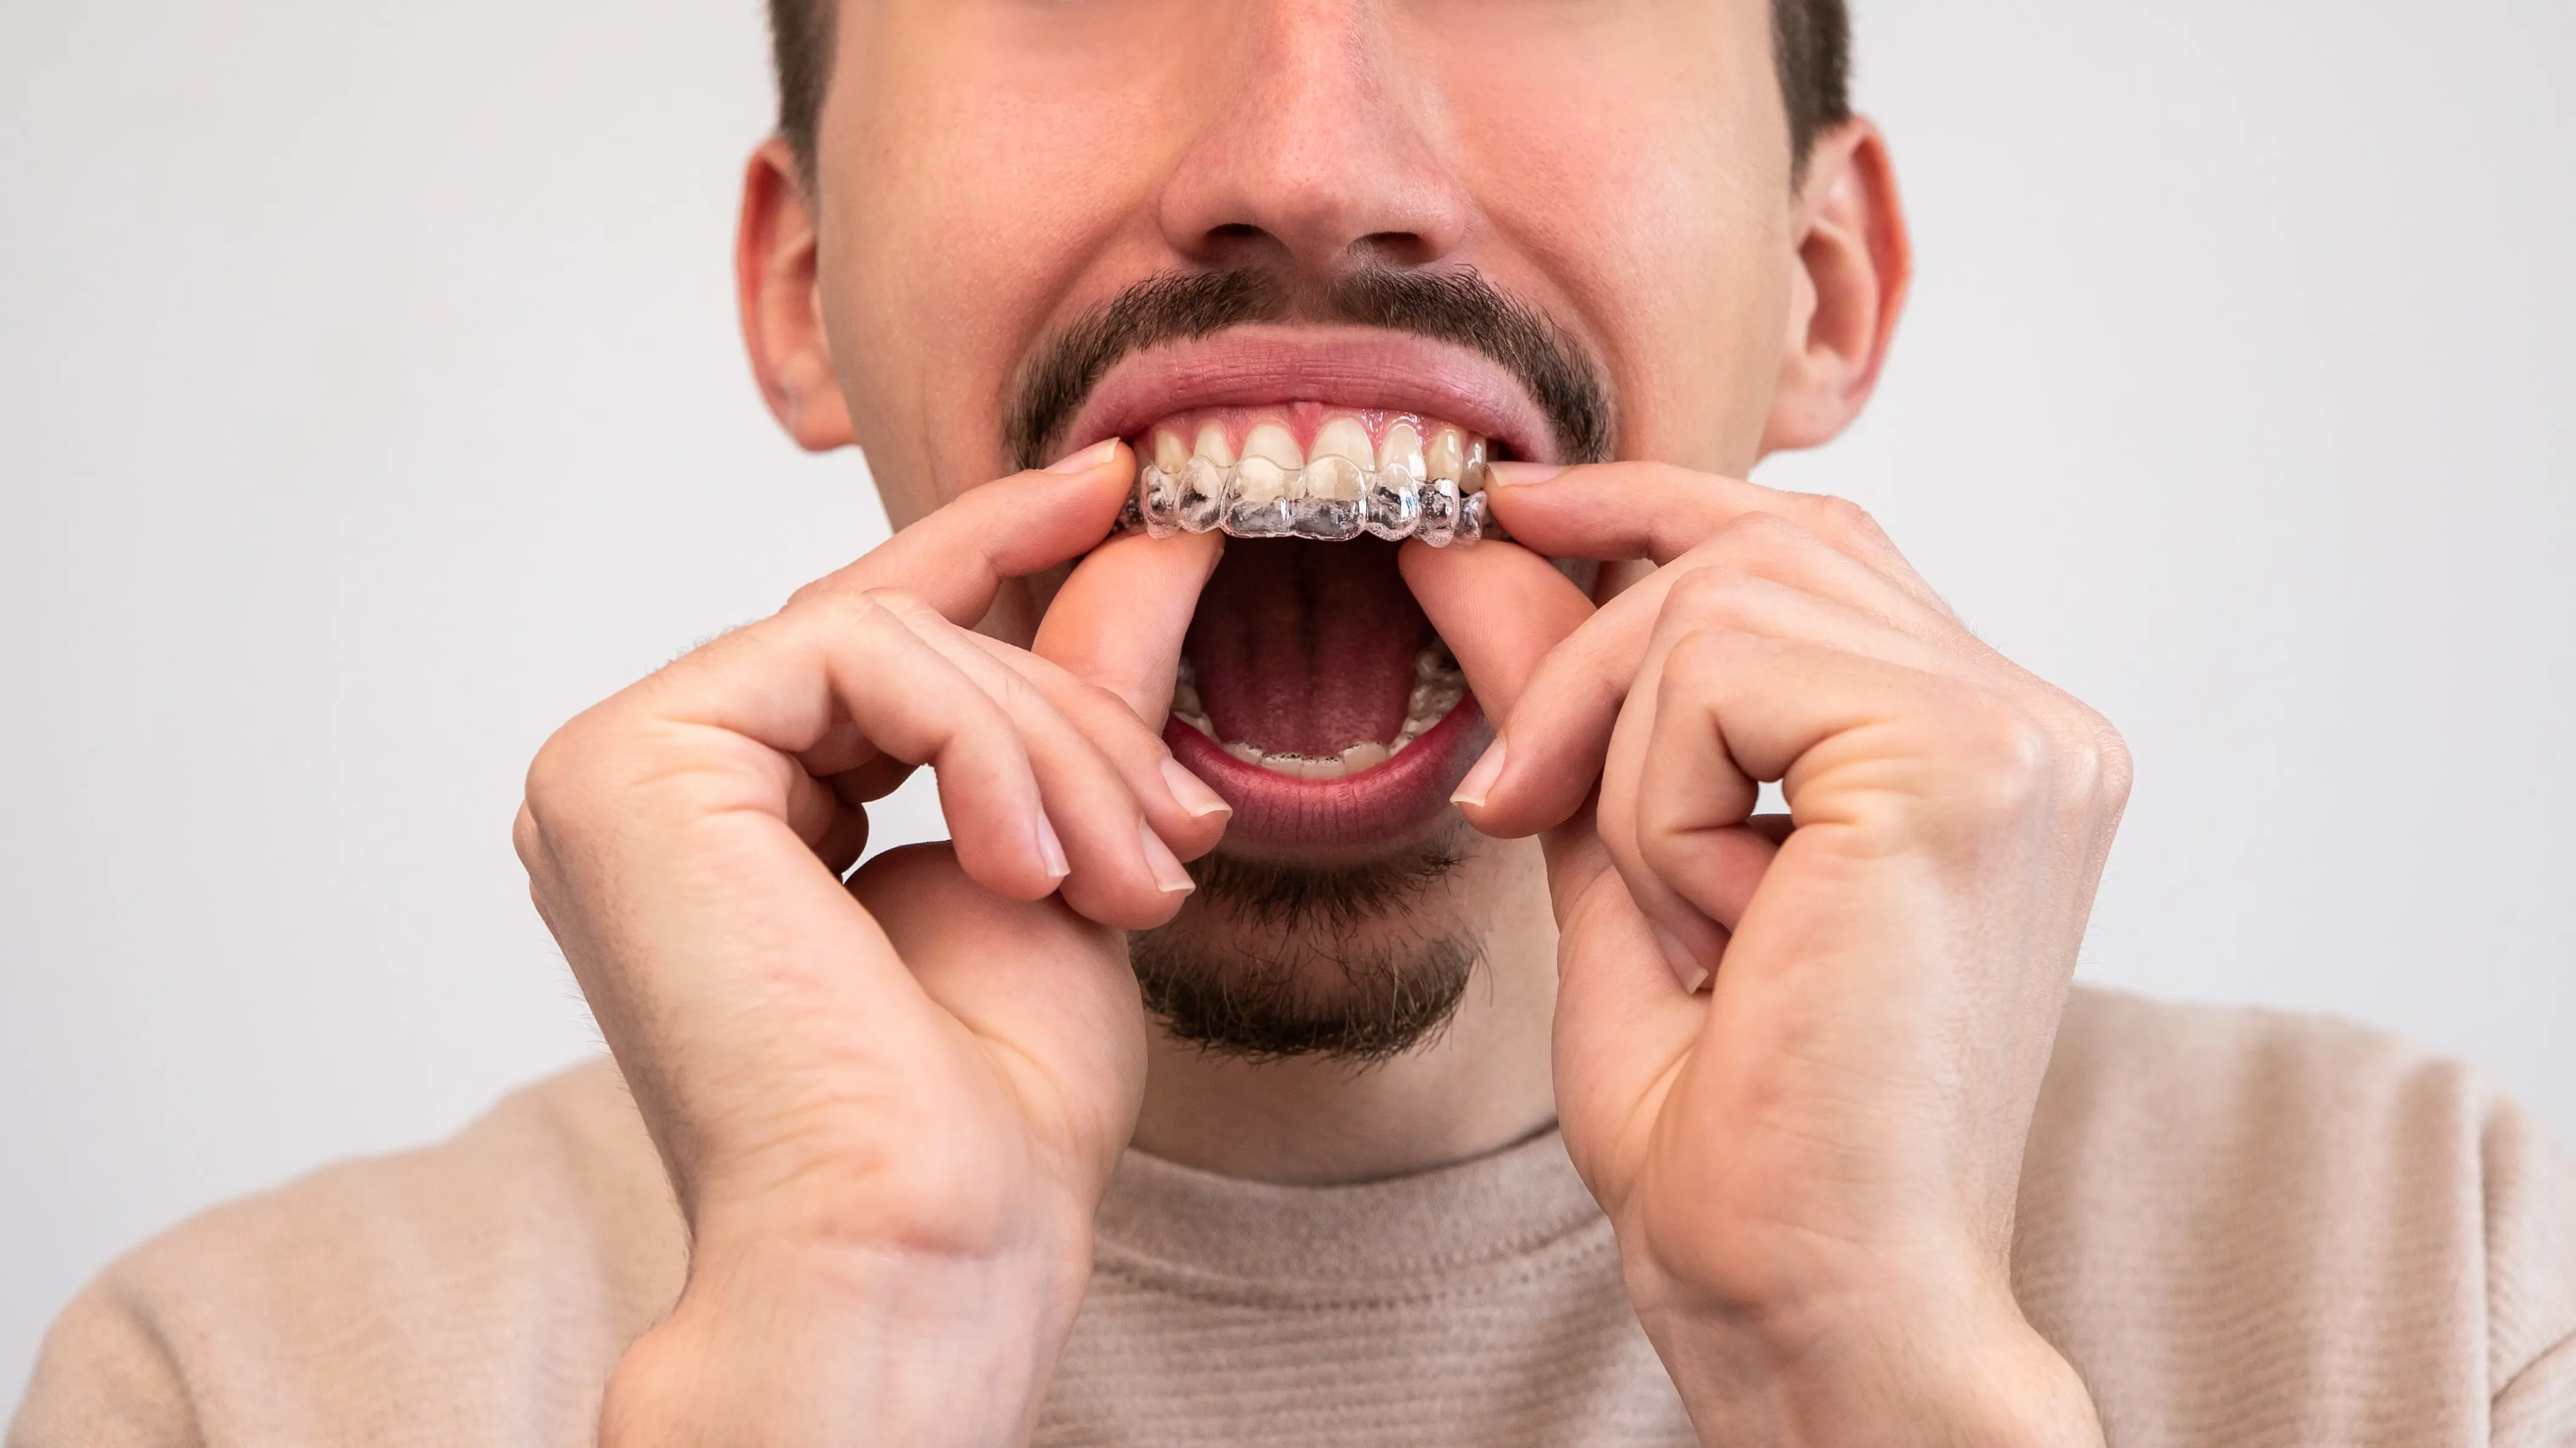 Does Invisalign Really Fix Bad Teeth